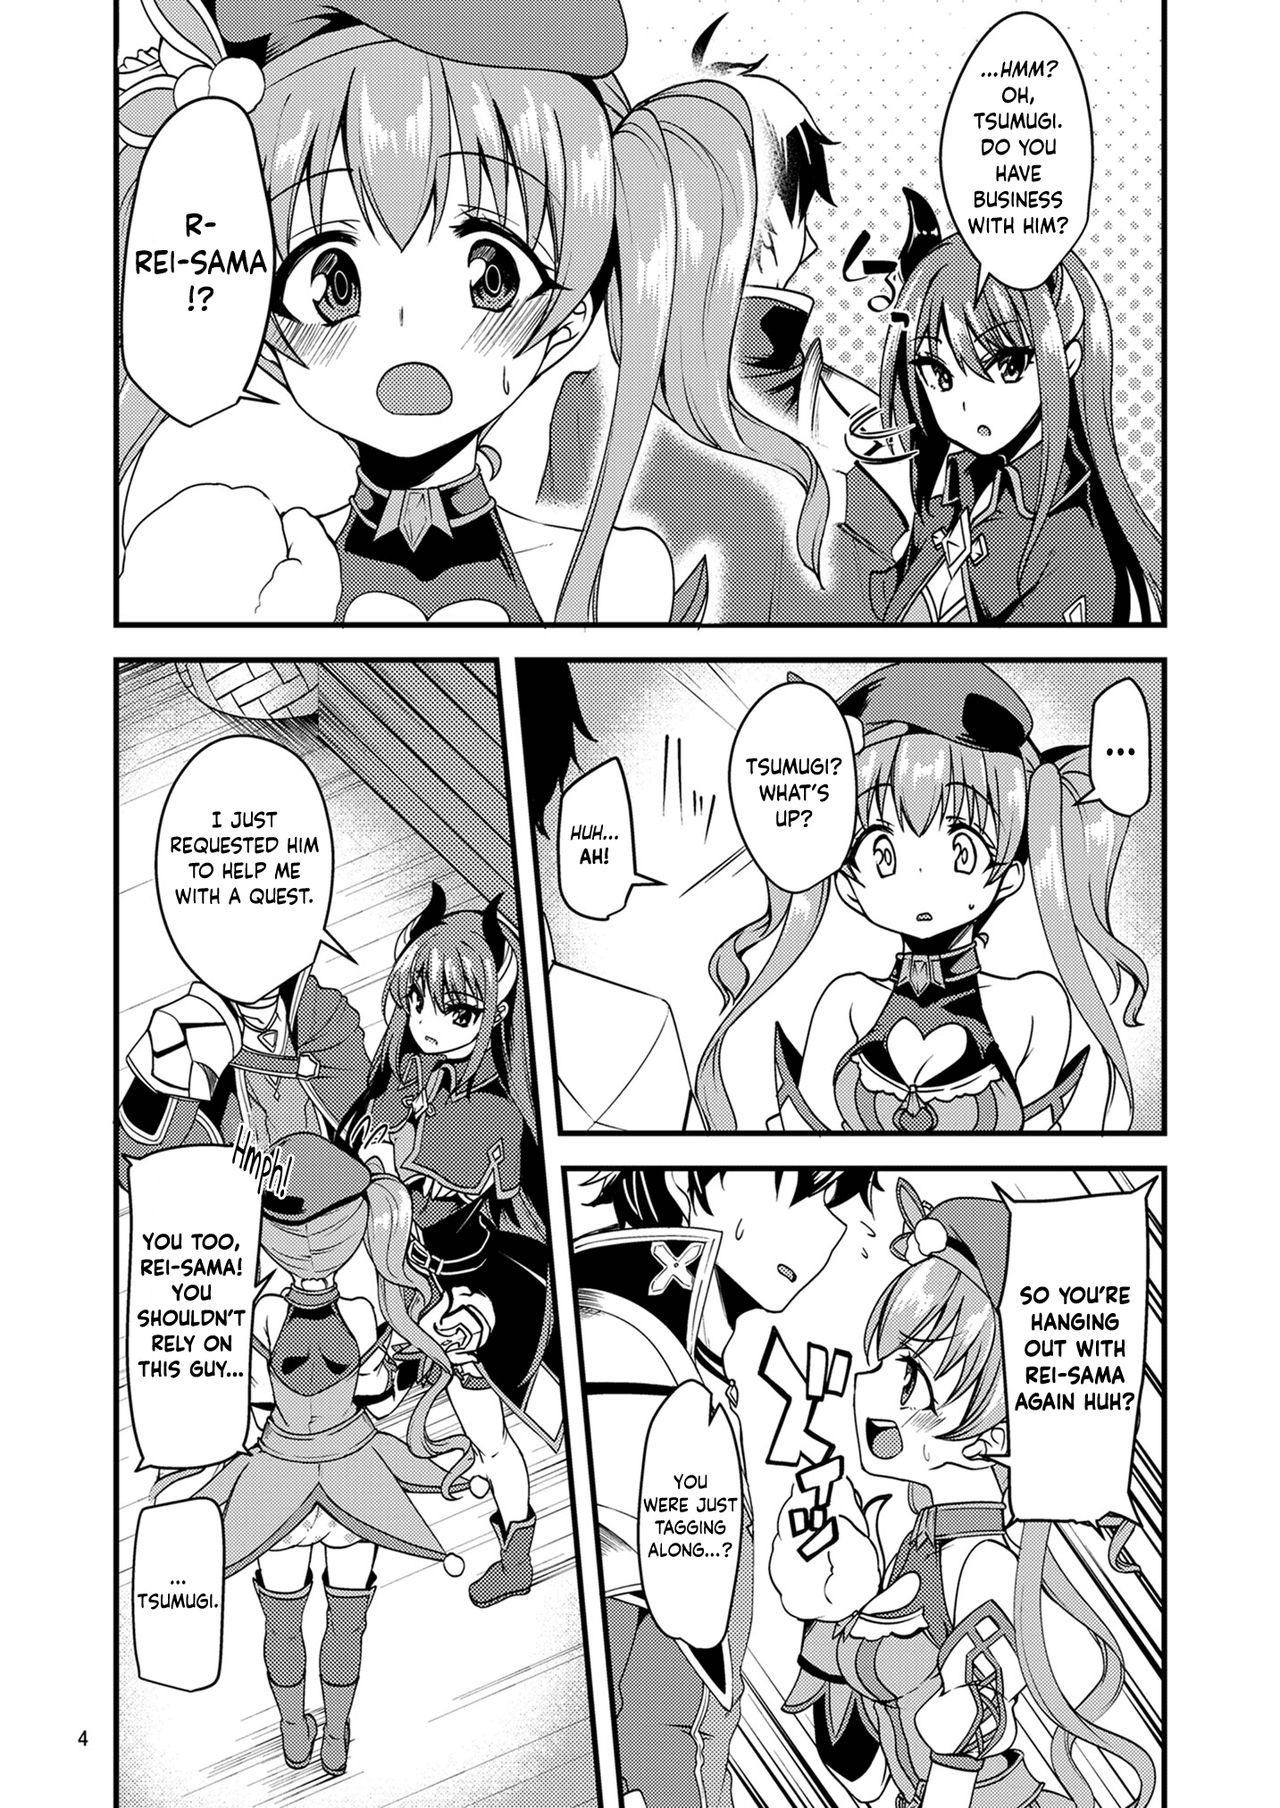 Plumper Tsumugi Make Heroine Move!! - Princess connect Balls - Page 3